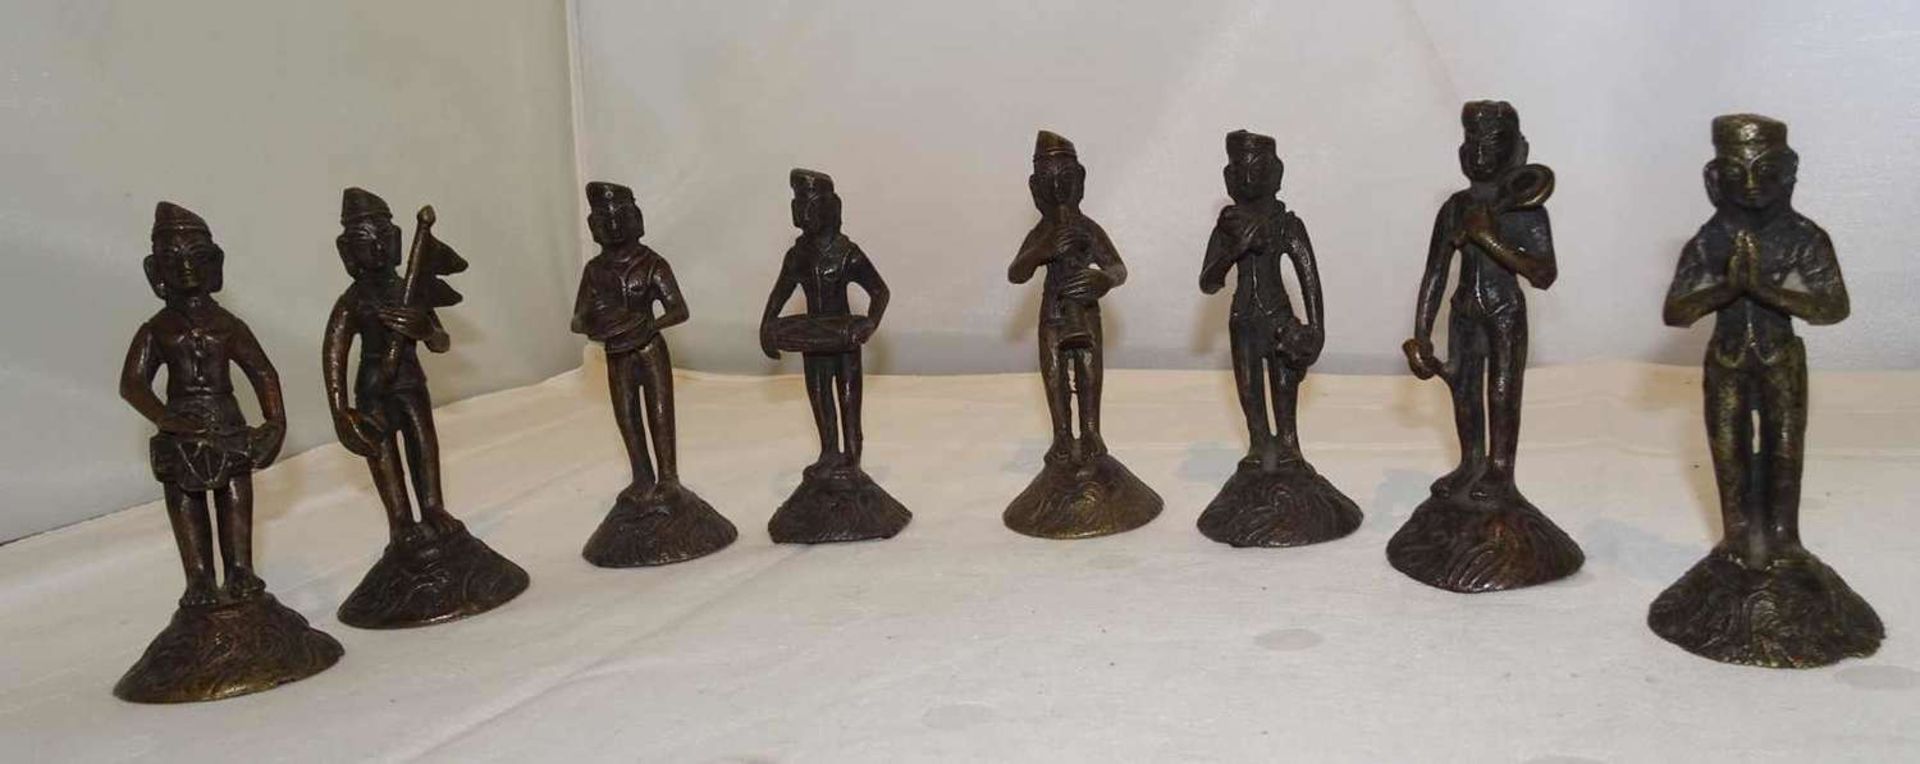 Lot Bronzefiguren Asien, insgesamt 8 Stück, Kapelle darstellend. Höhe ca. 9 cm.Lot of bronze figures